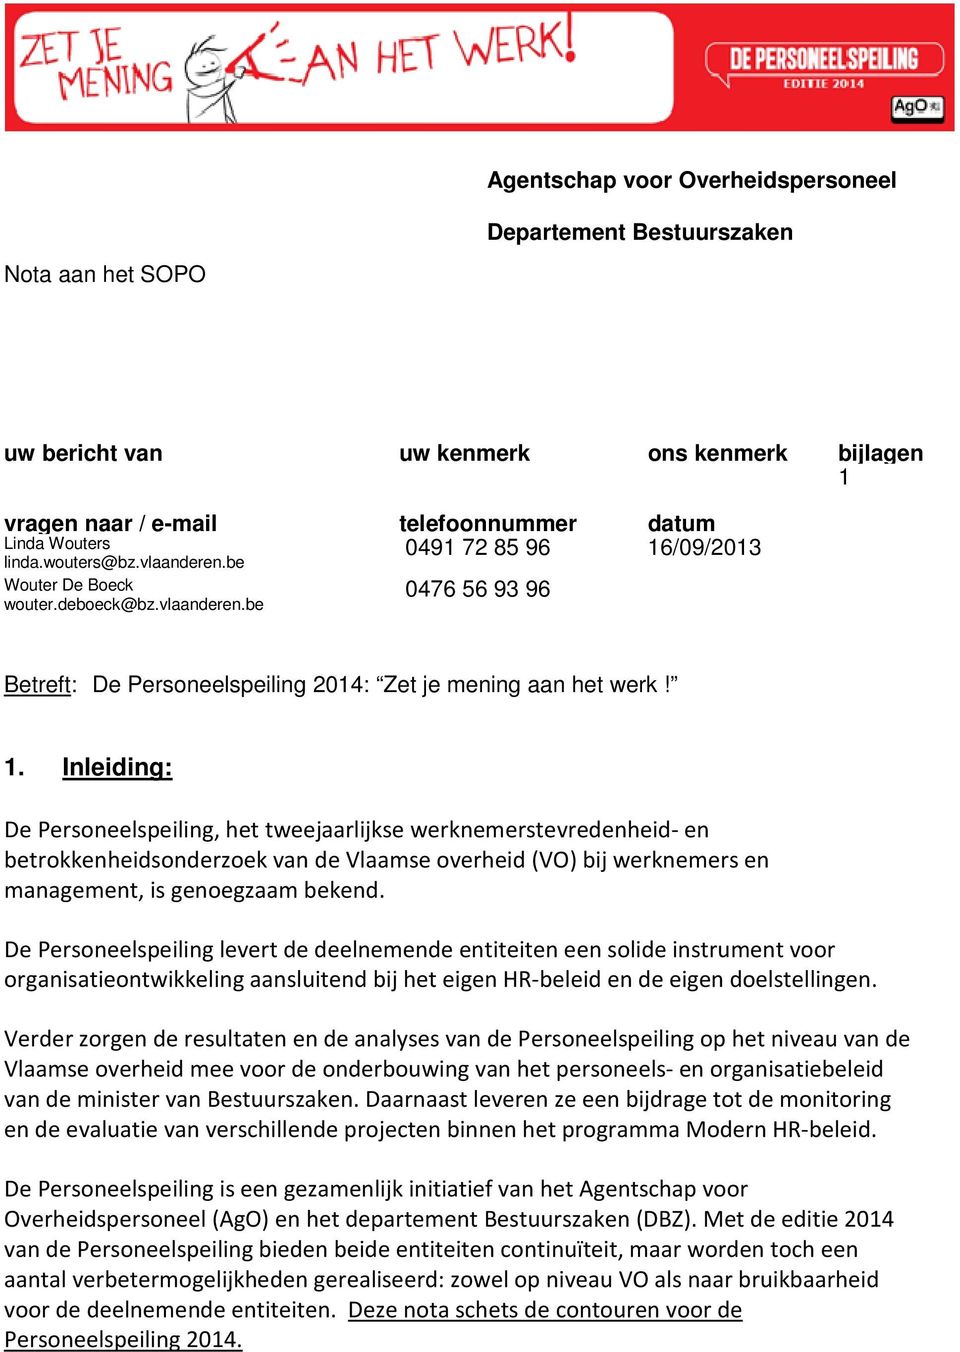 Inleiding: De Personeelspeiling, het tweejaarlijkse werknemerstevredenheid- en betrokkenheidsonderzoek van de Vlaamse overheid (VO) bij werknemers en management, is genoegzaam bekend.